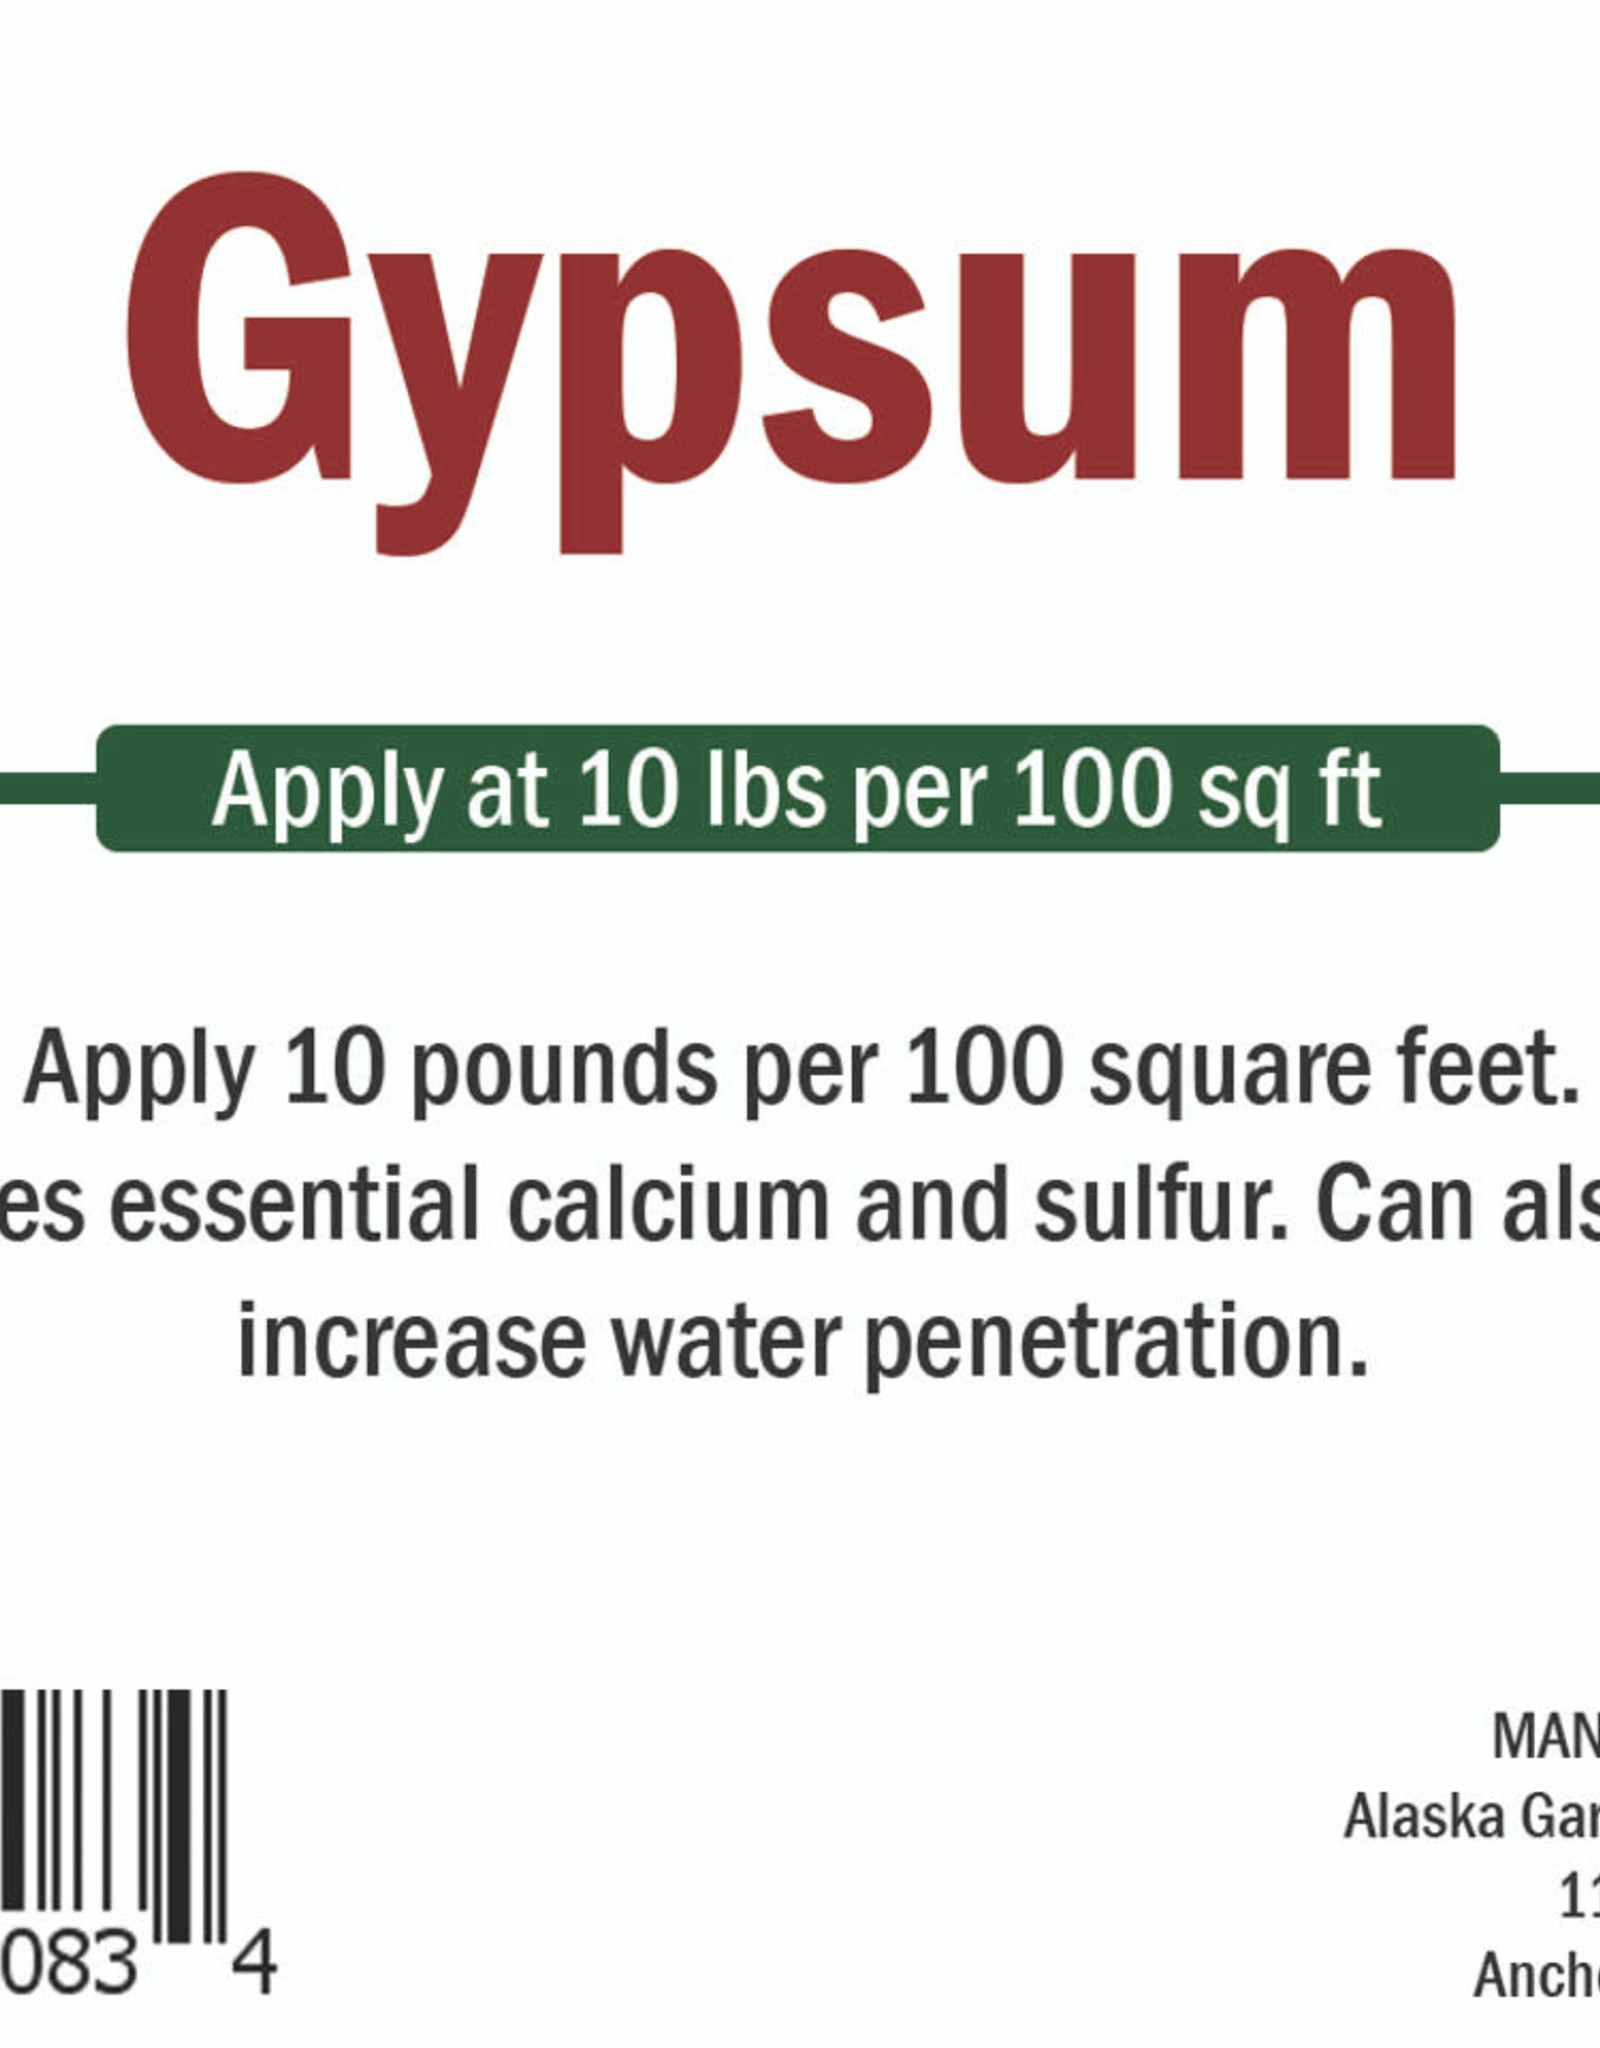 Arctic Gro Gypsum 10lb JUG  calcium sulfate